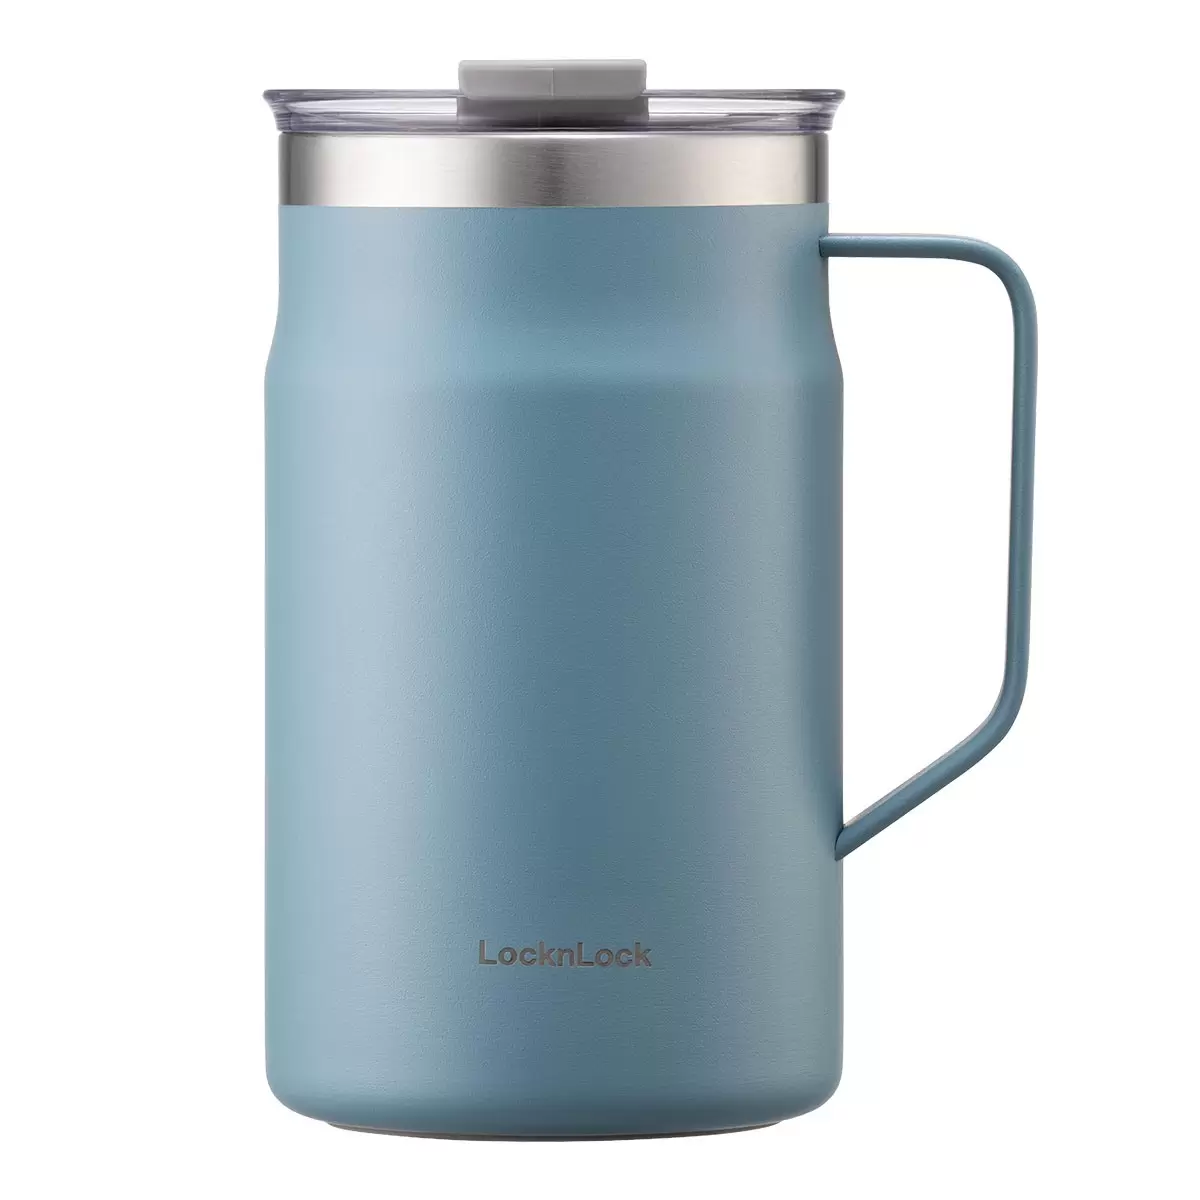 LocknLock 都會馬克咖啡杯 600毫升 X 2件組